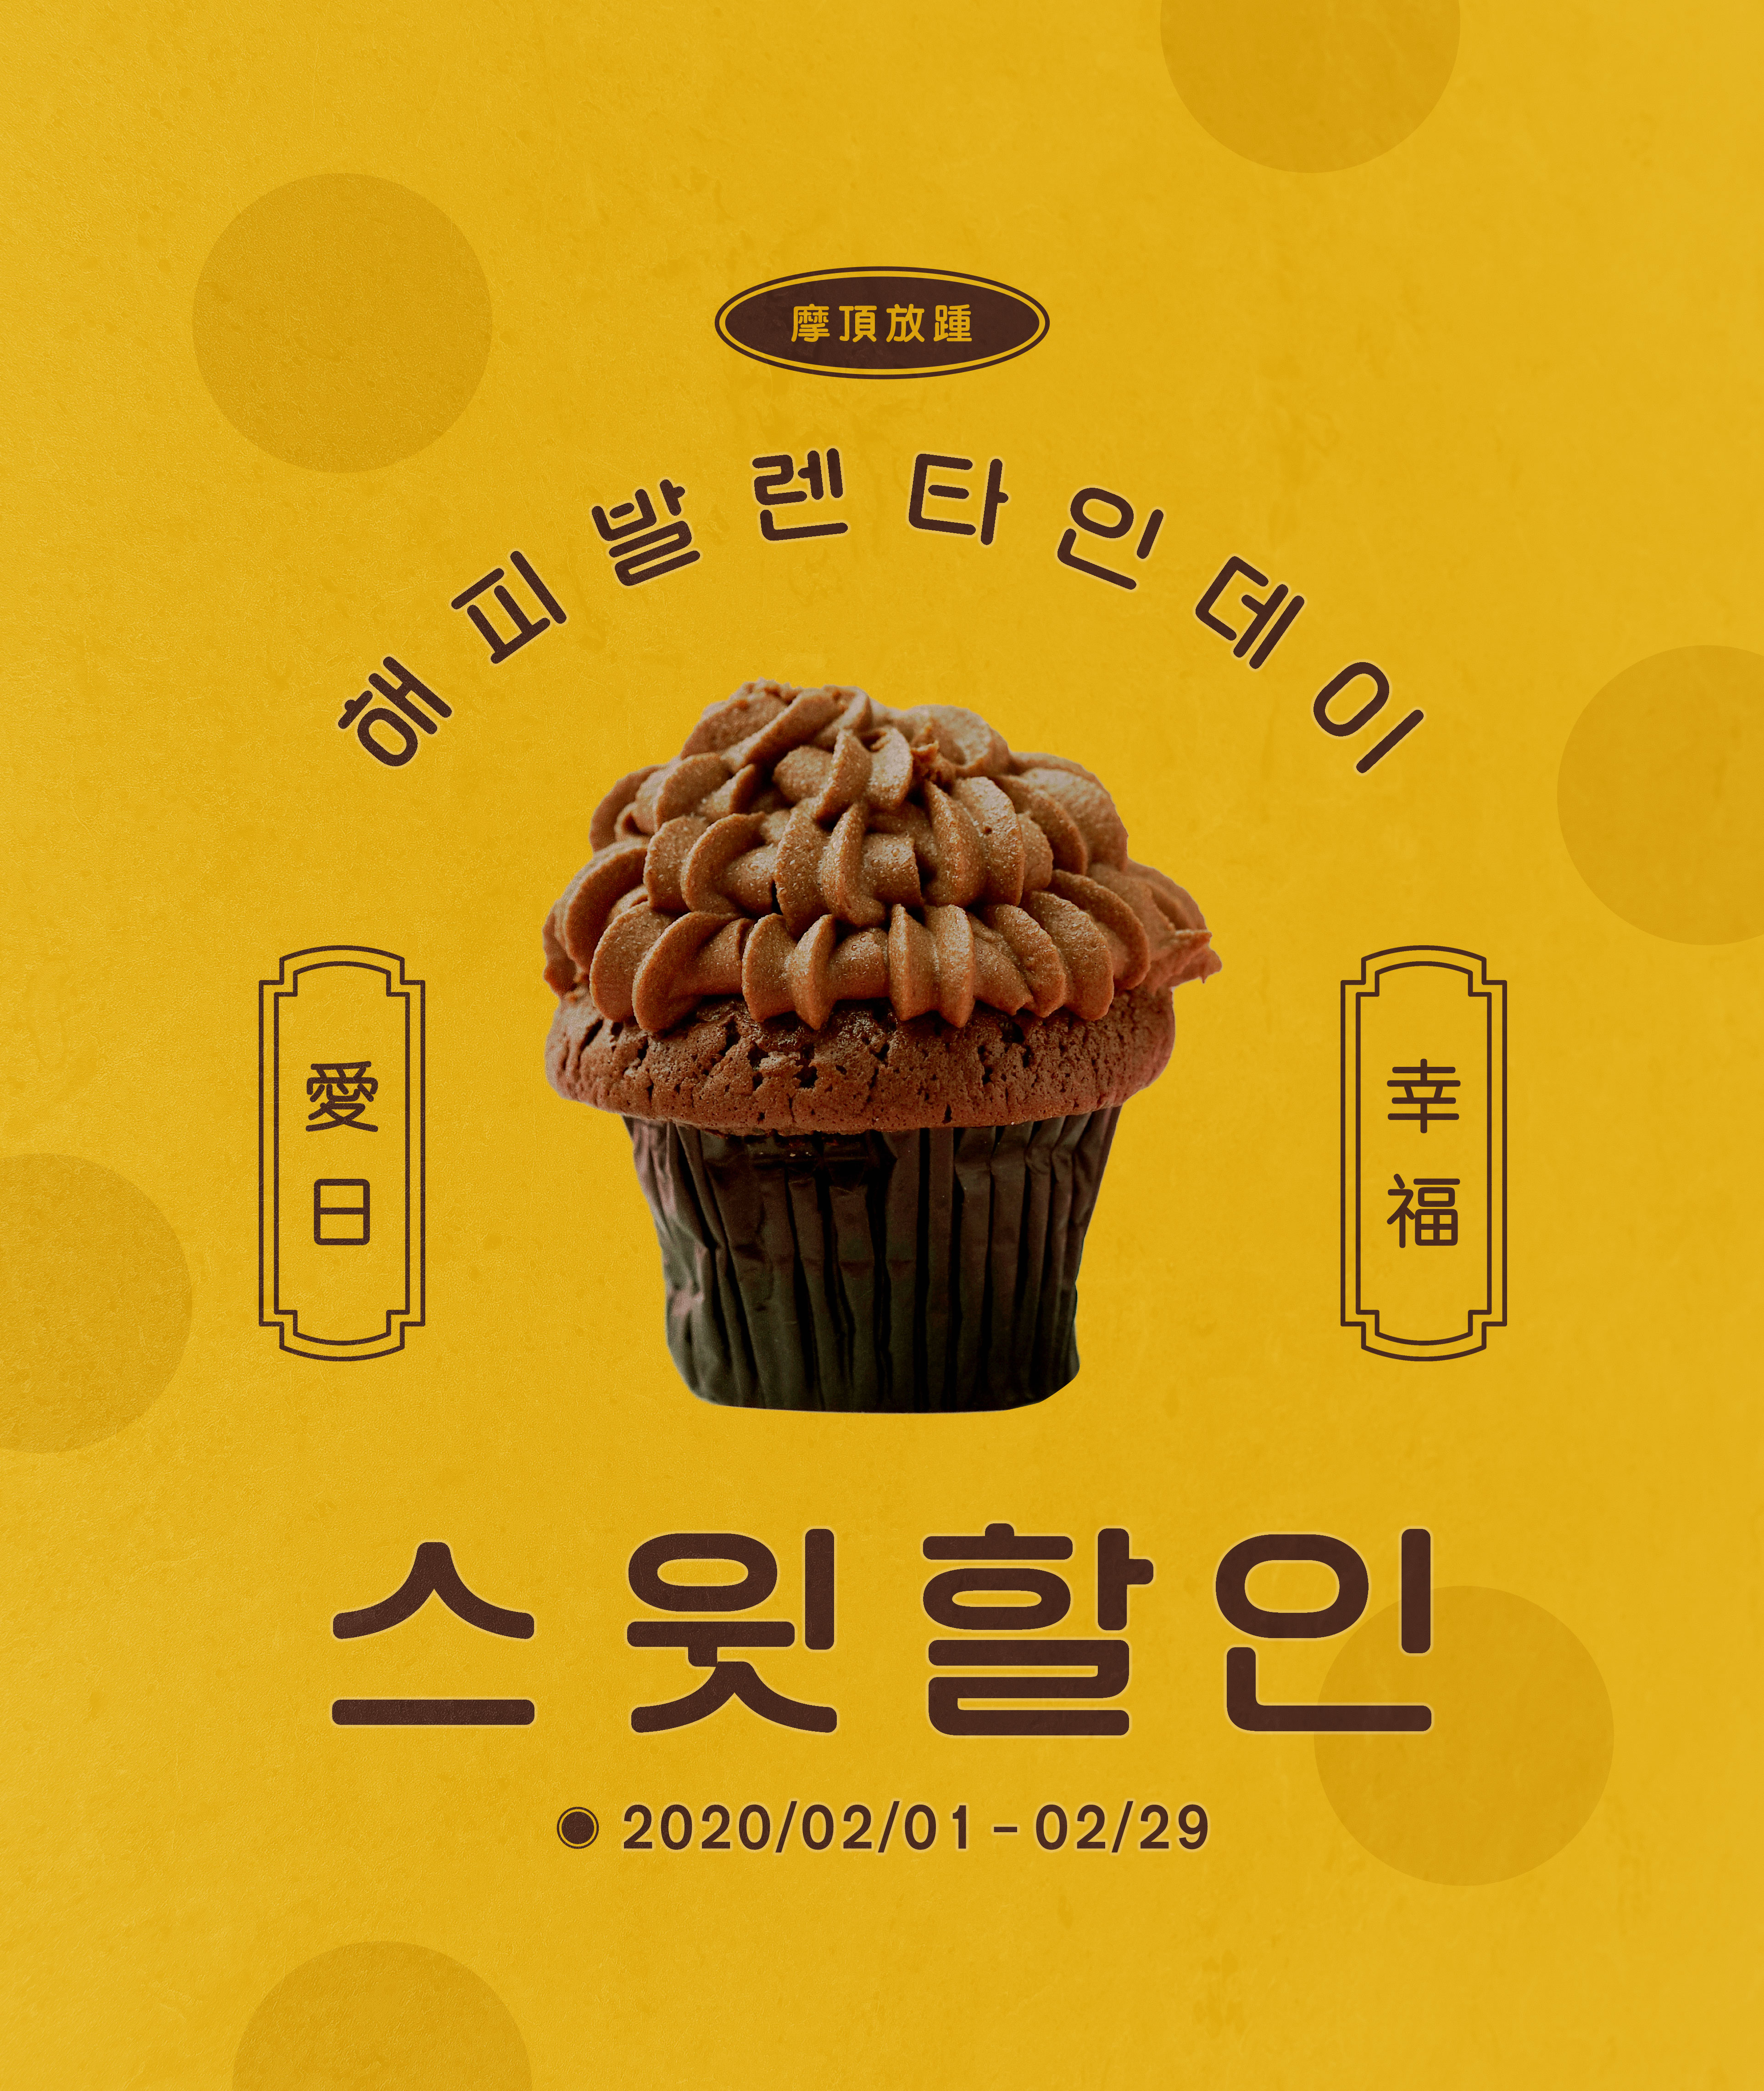 情人节甜品蛋糕促销活动海报PSD素材素材库精选韩国素材插图